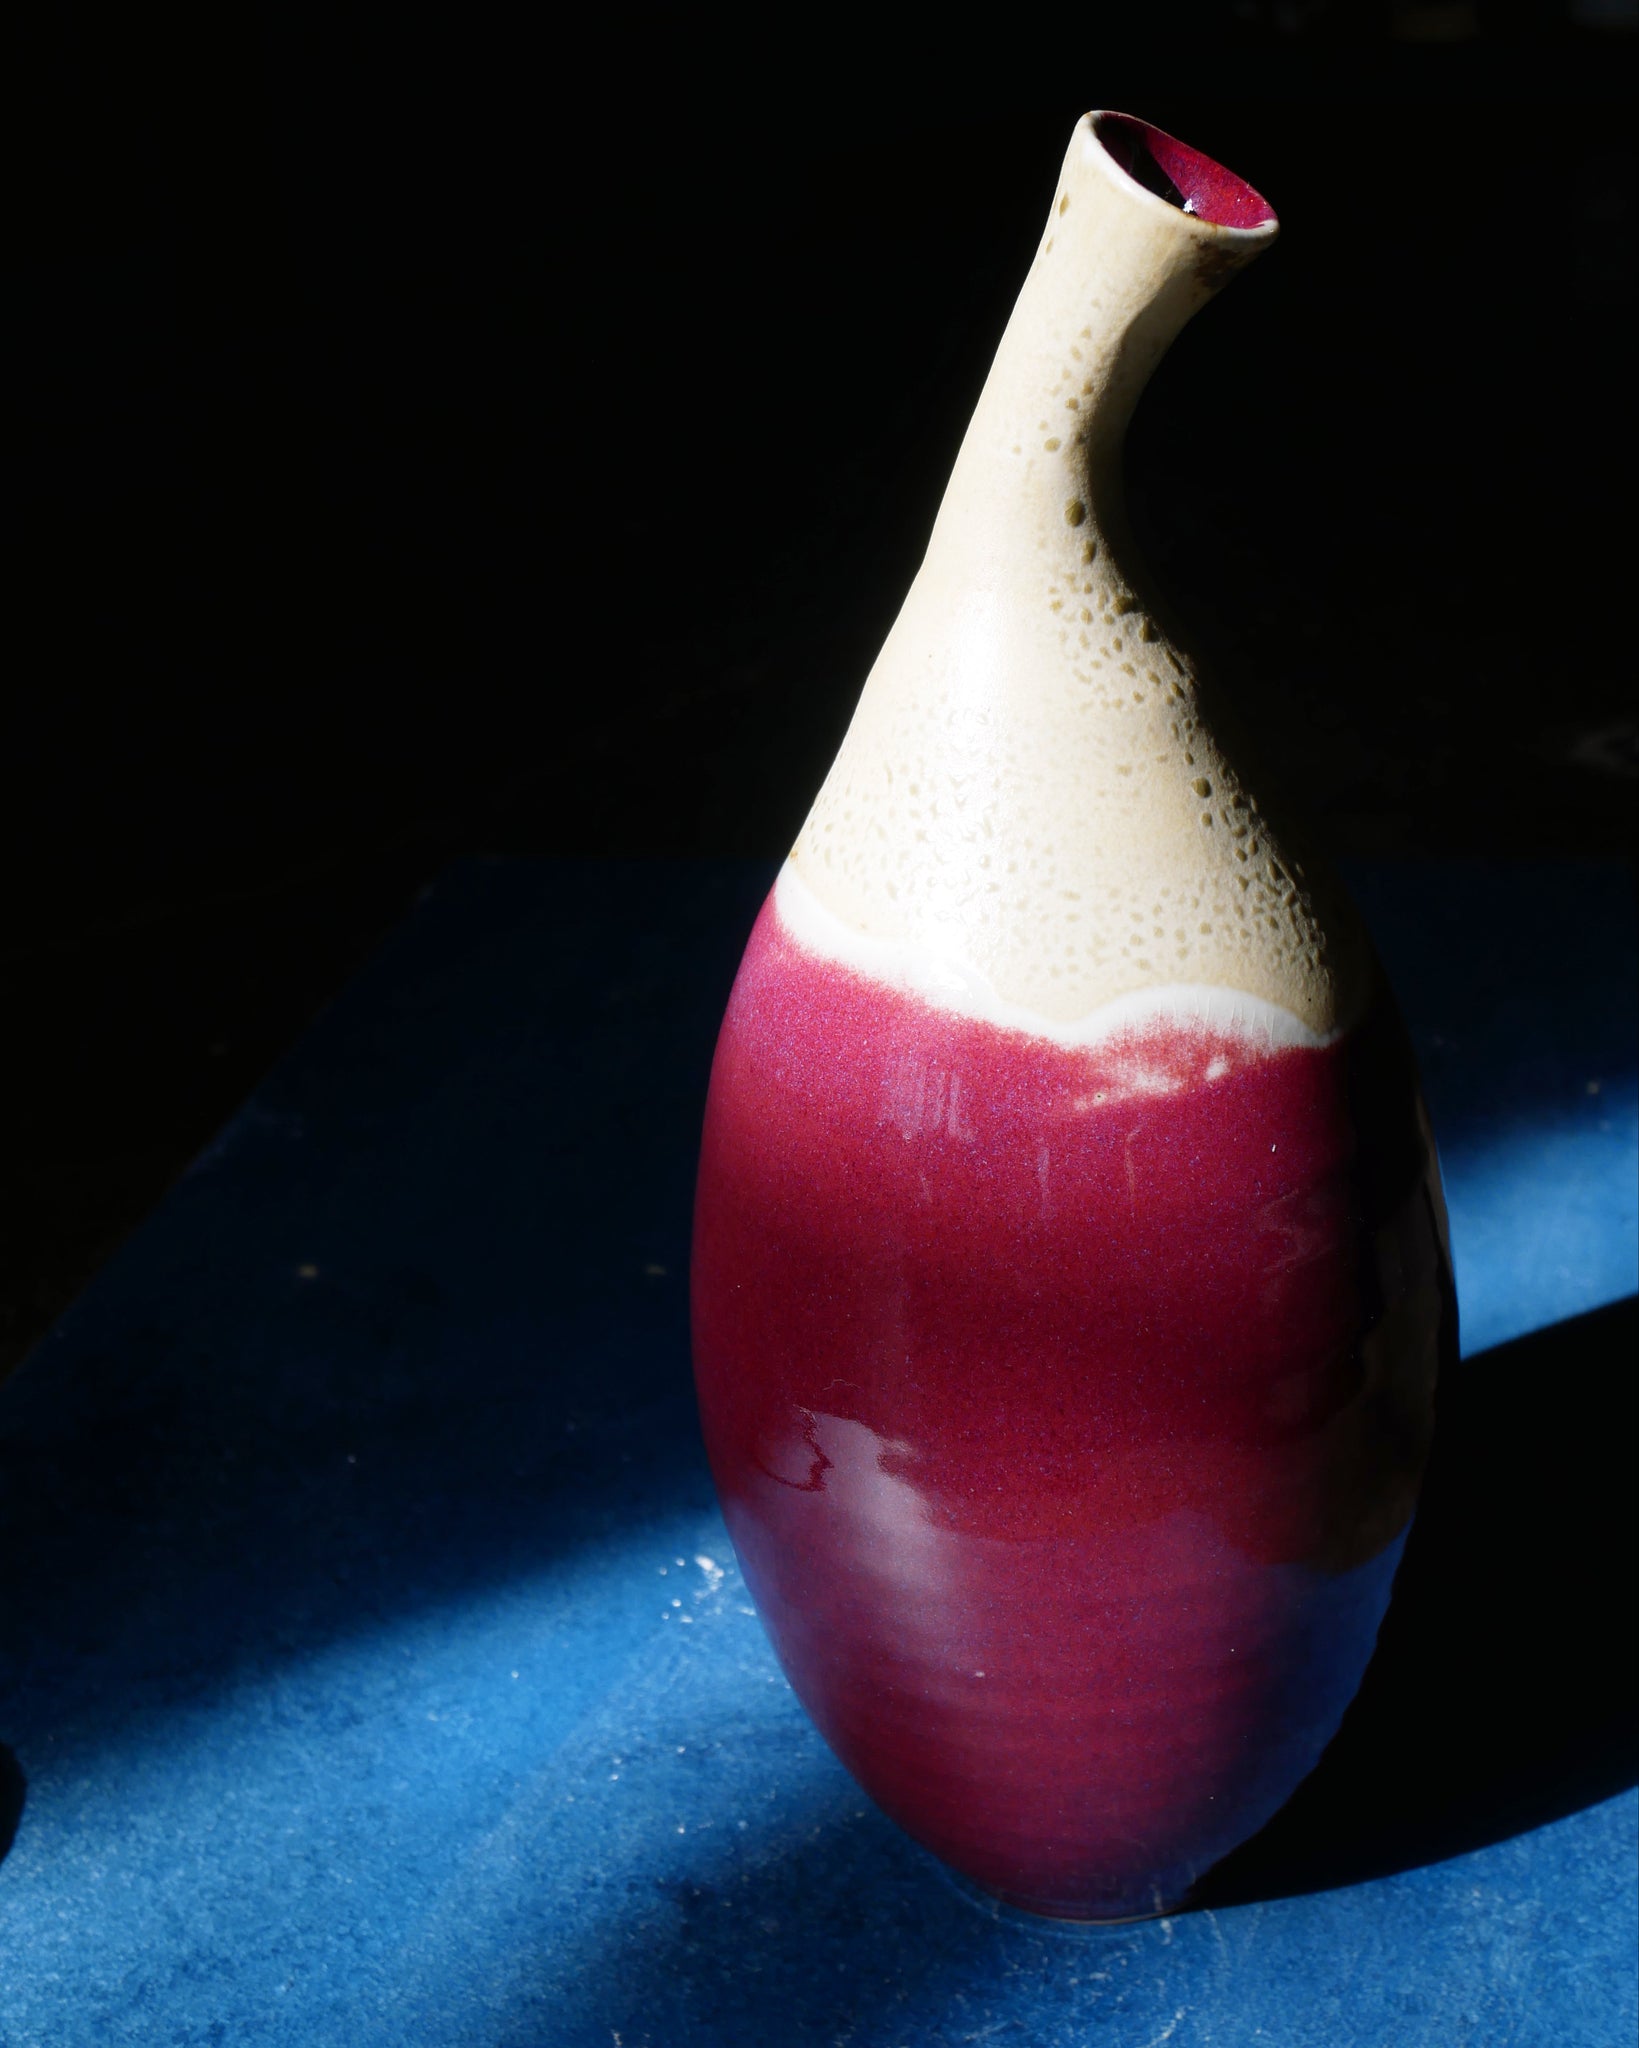 Copper Red Bent Neck Vase - I